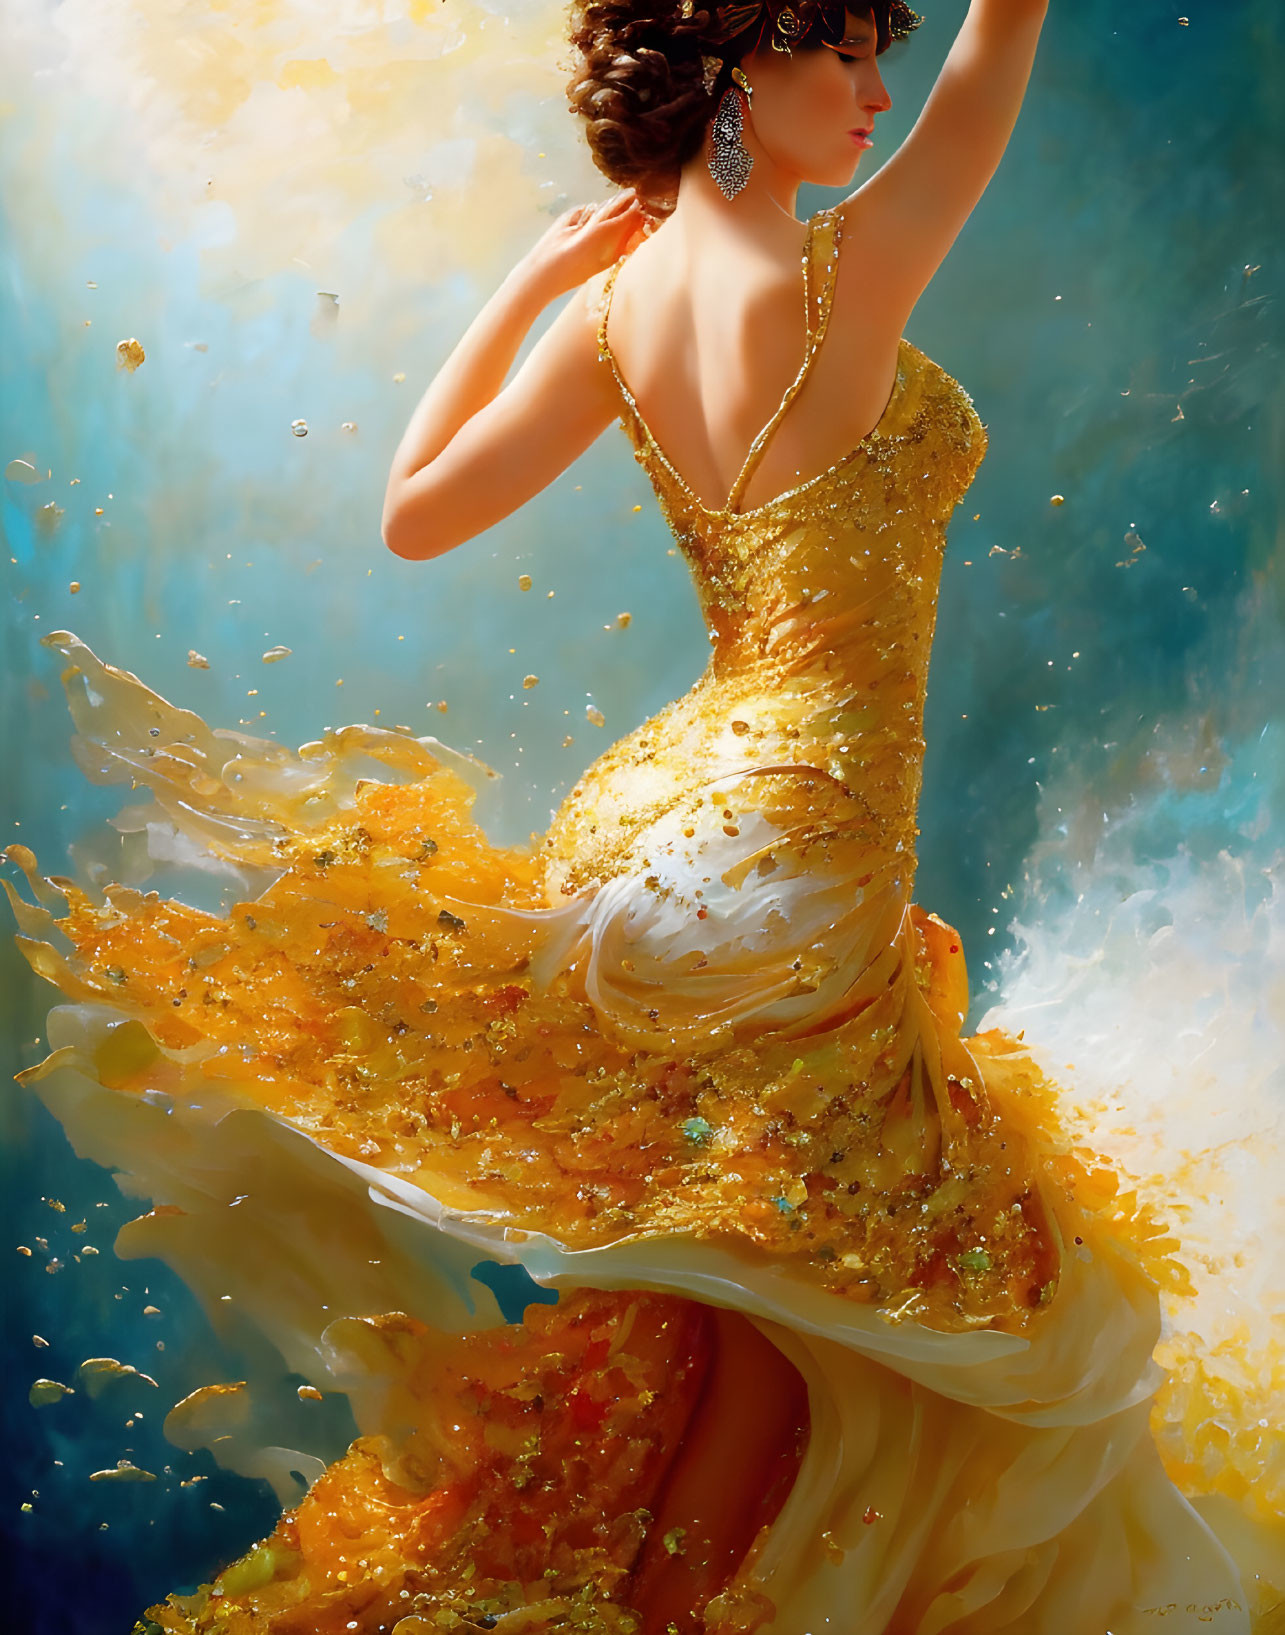 Elegant woman in golden gown dances in dreamy backdrop